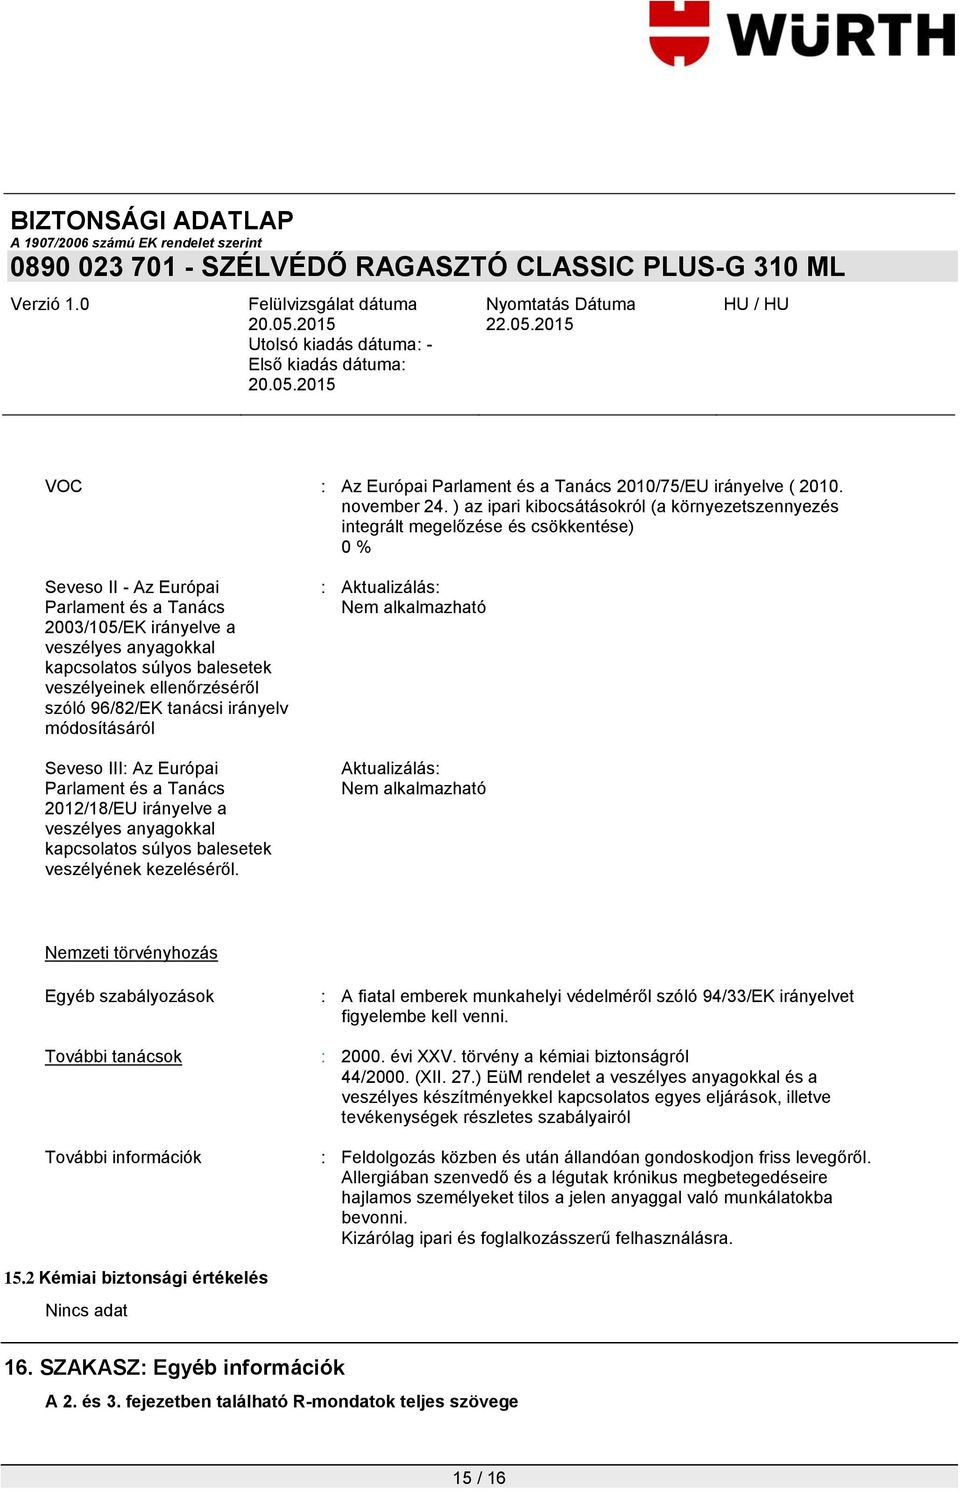 balesetek veszélyeinek ellenőrzéséről szóló 96/82/EK tanácsi irányelv módosításáról Seveso III: Az Európai Parlament és a Tanács 2012/18/EU irányelve a veszélyes anyagokkal kapcsolatos súlyos